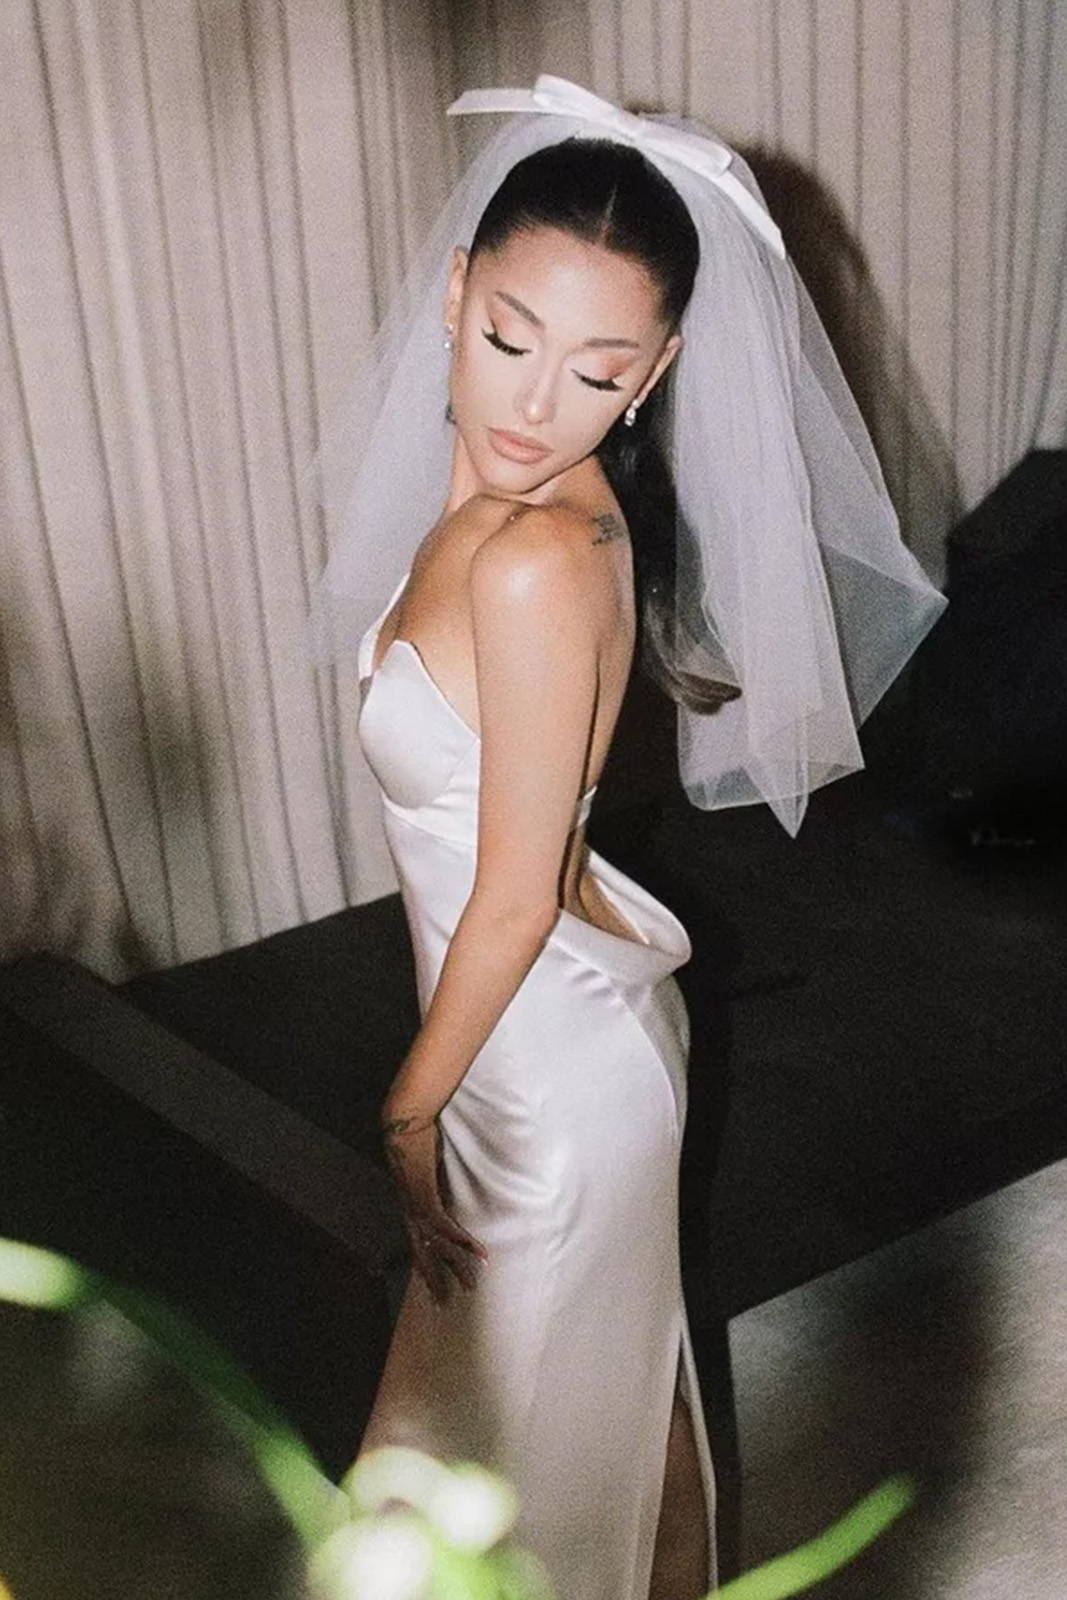 Arianna Grande in her wedding veil